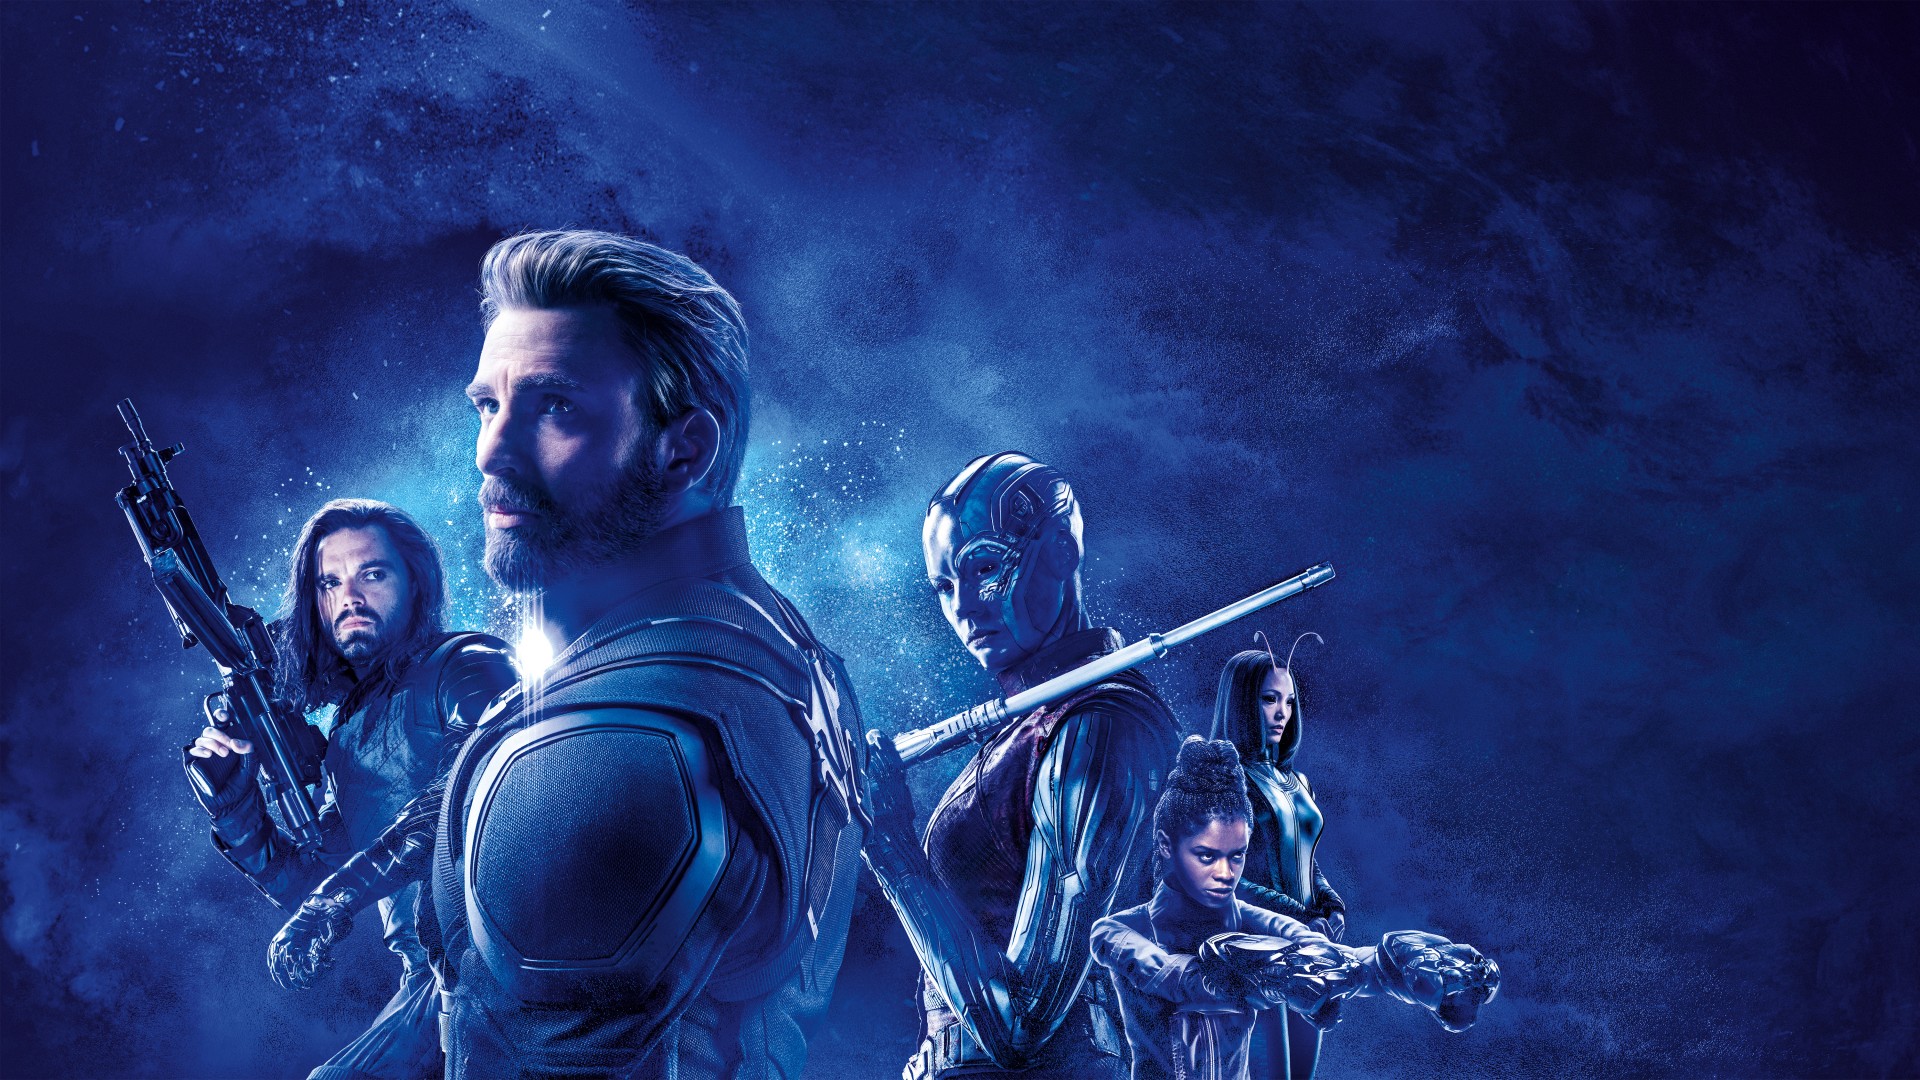 Captain America Nebula Winter Soldier - Avengers Endgame Captain America Team - HD Wallpaper 